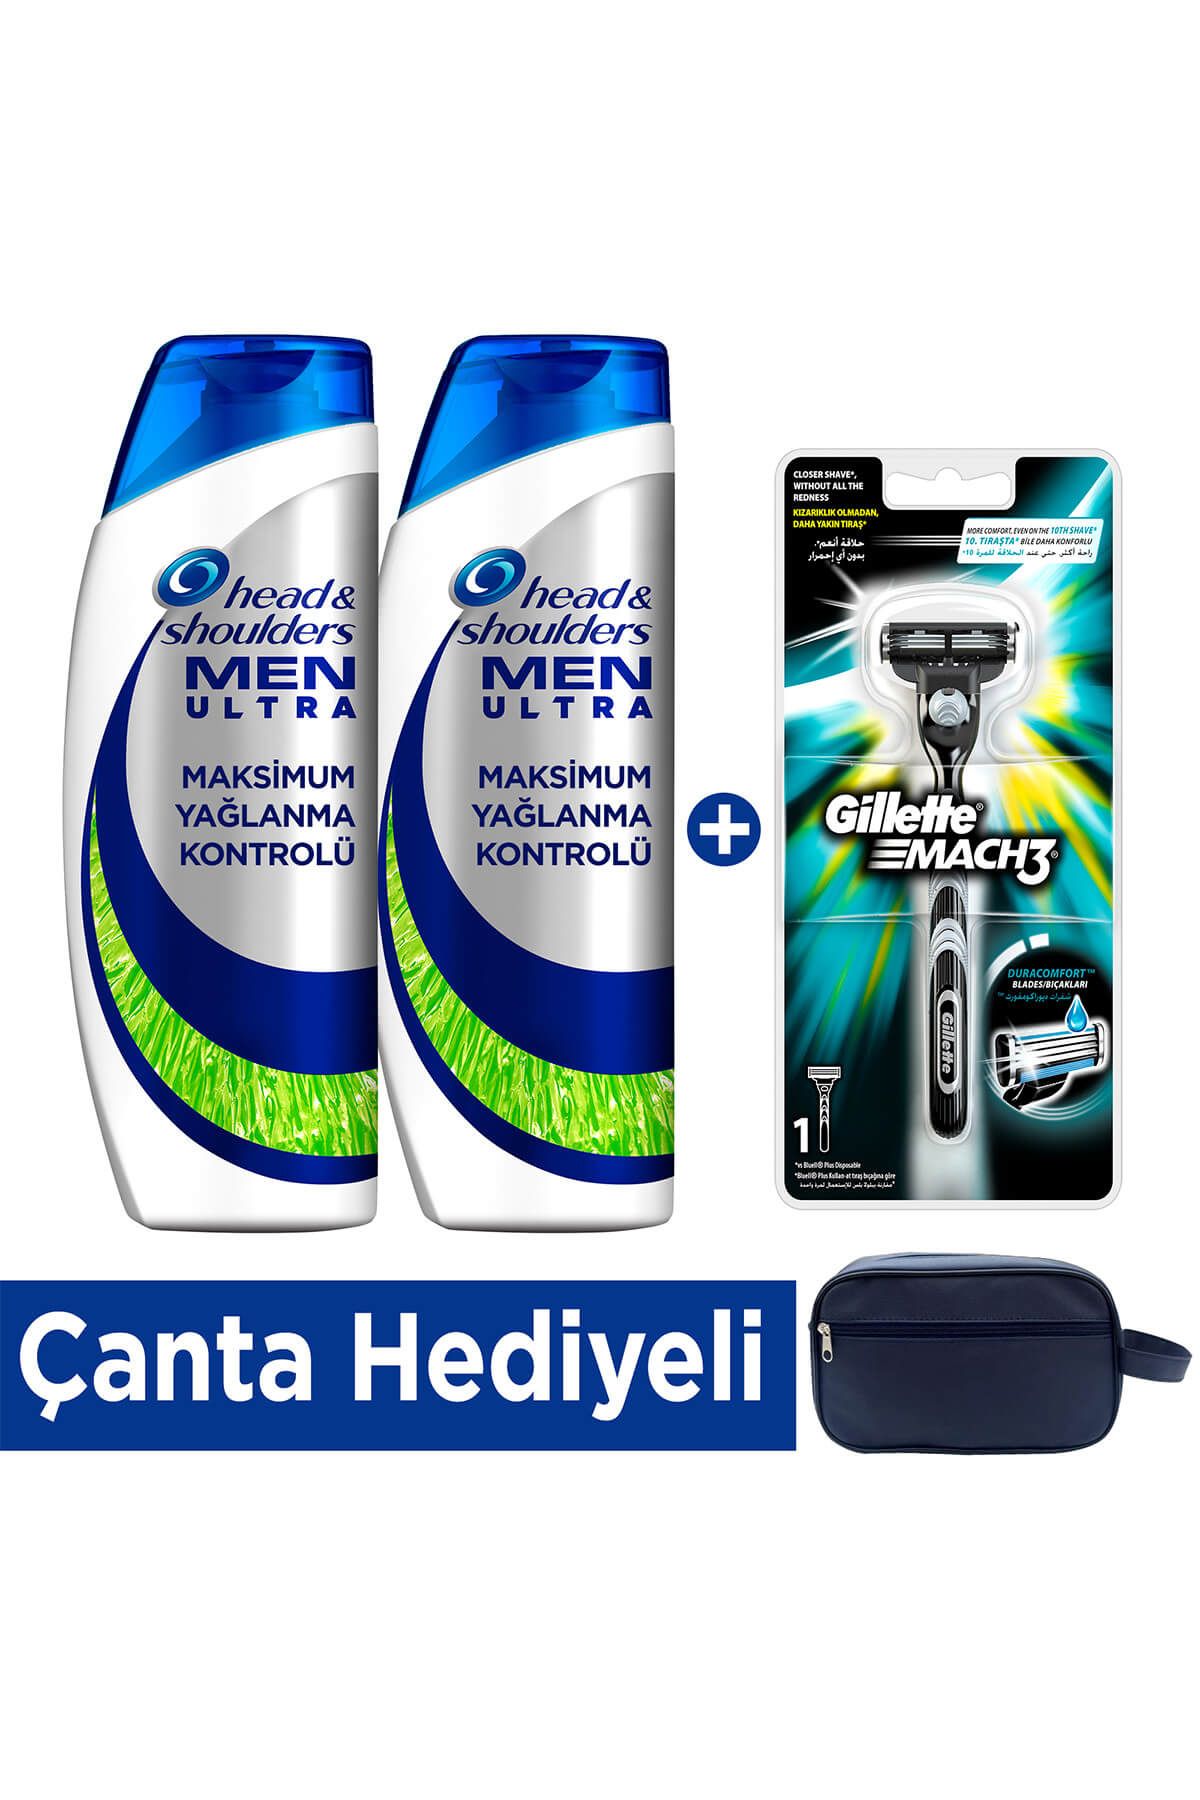 Gillette Ultra Maksimum Yağlanma Kontrolü Şampuan 2x500 ml + Mach3 Tıraş Makinesi (Çanta Hediyeli)